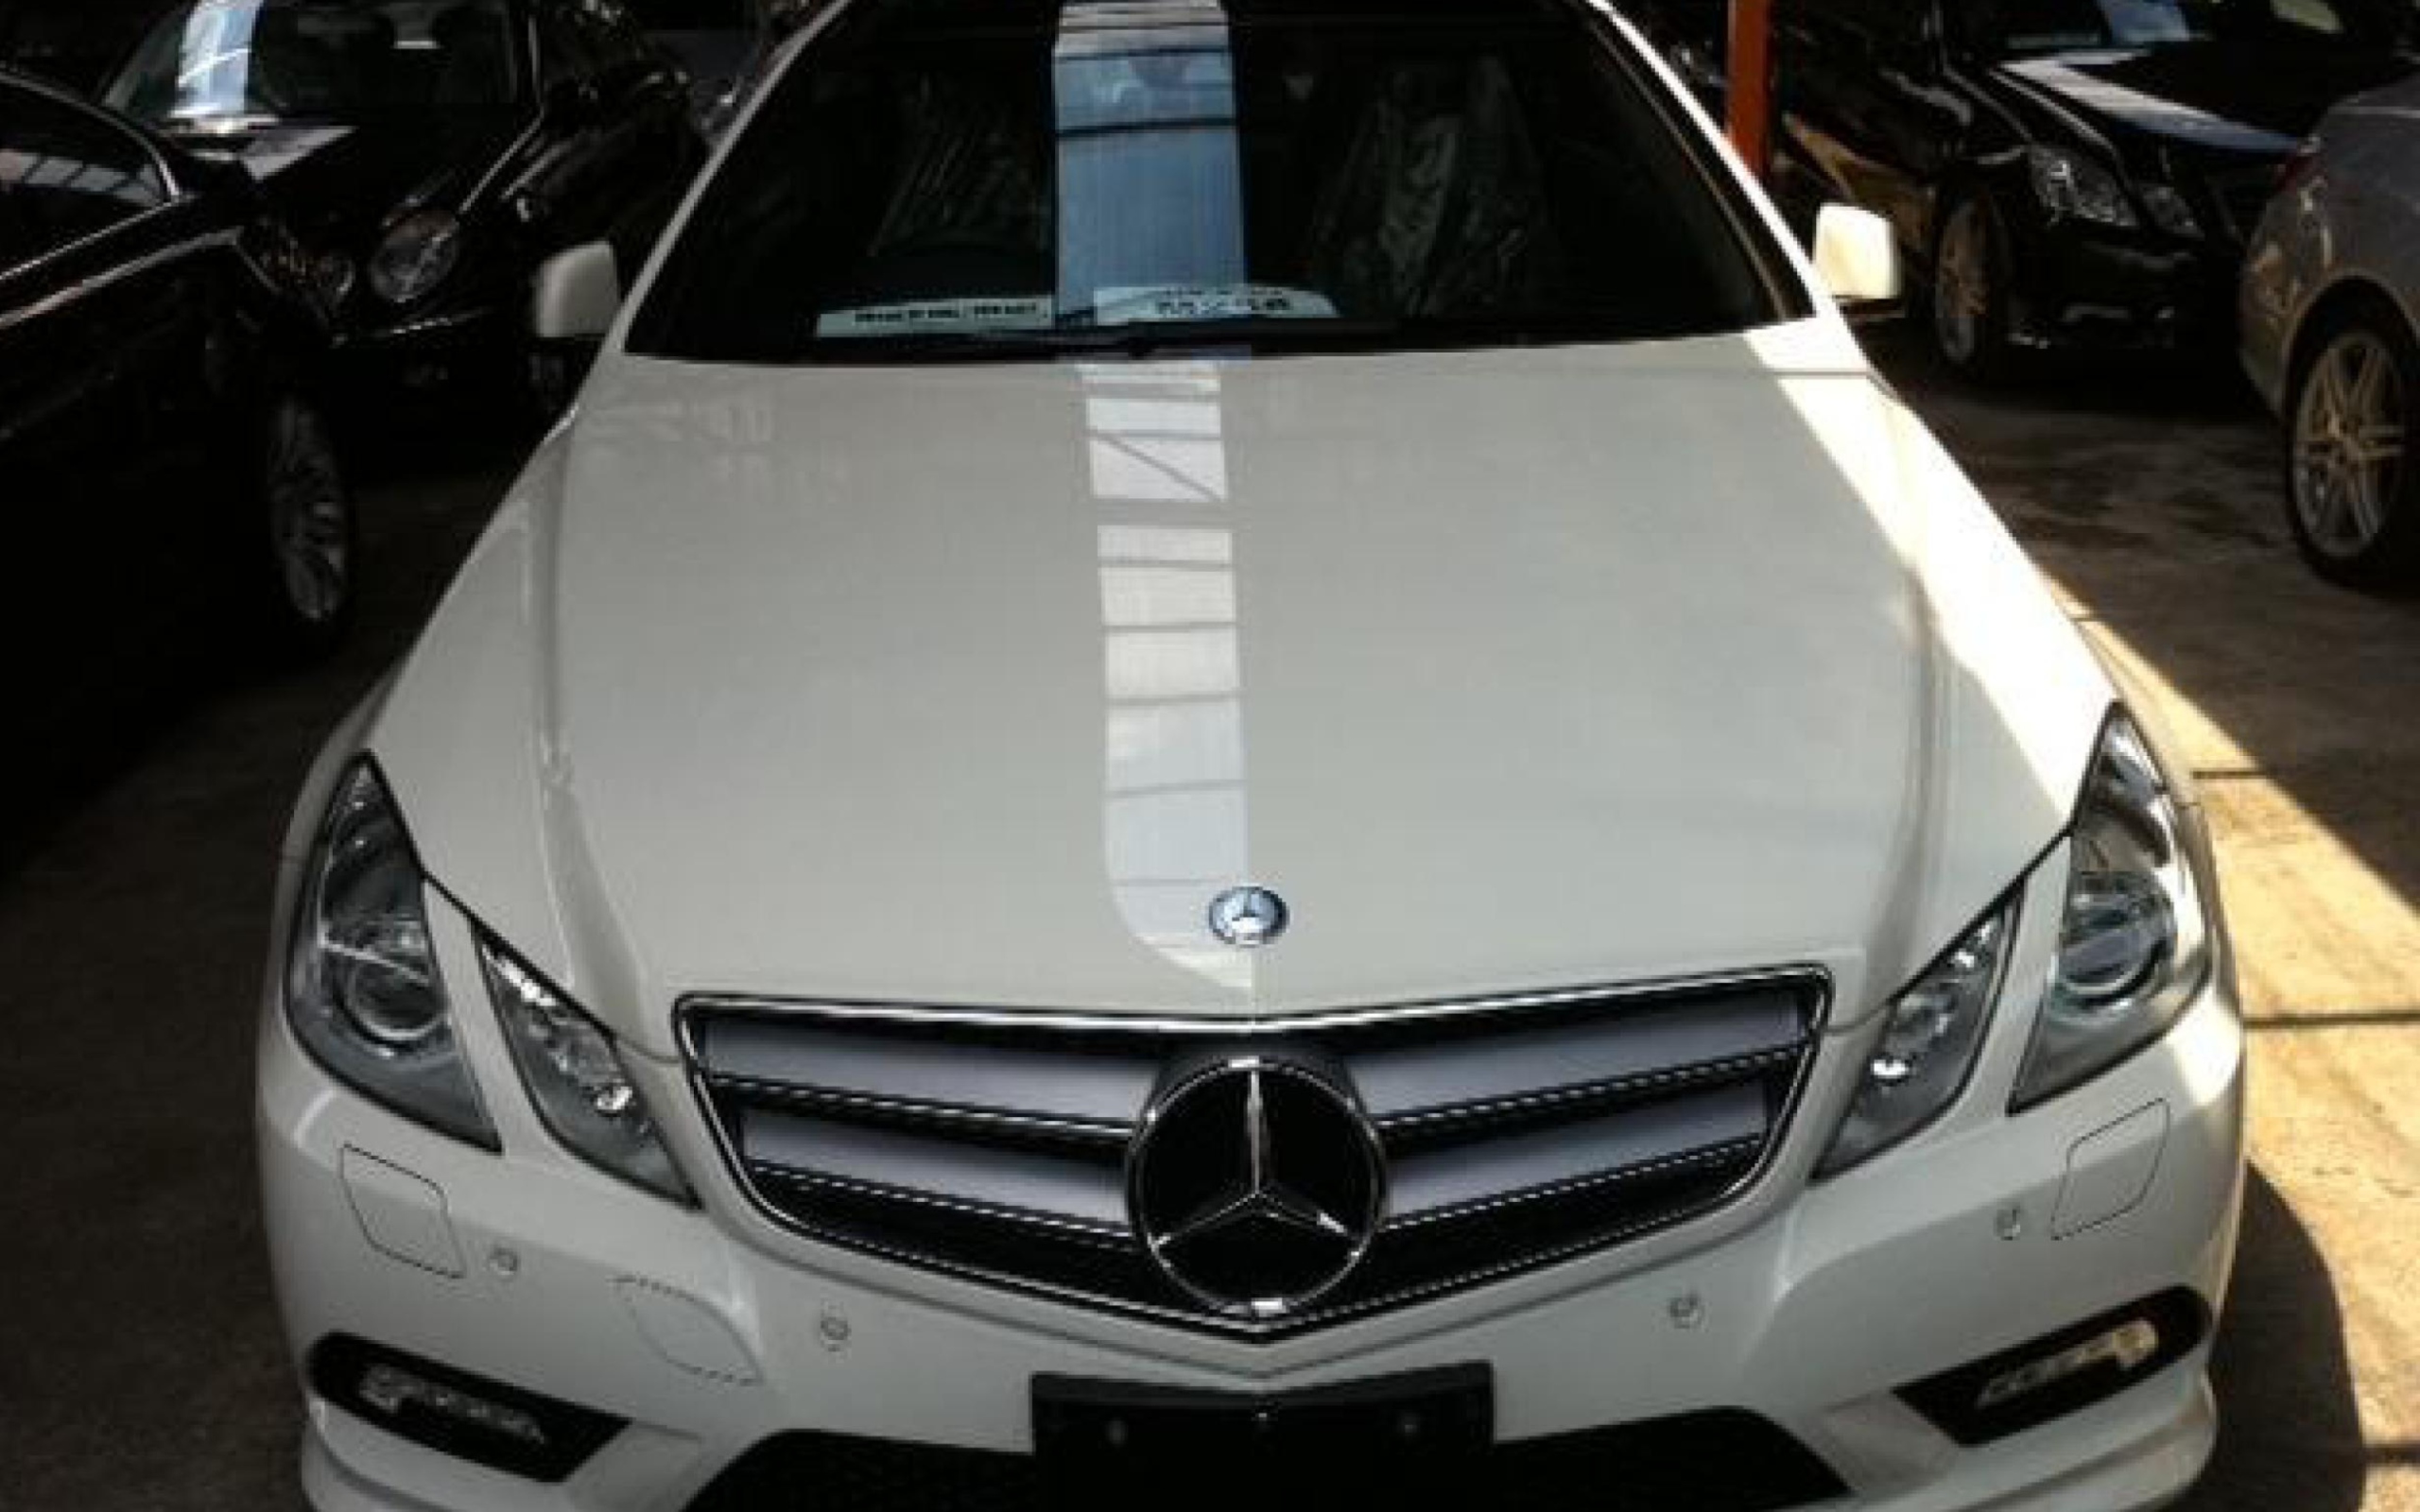 Mercedes wallpaper 2560x1600